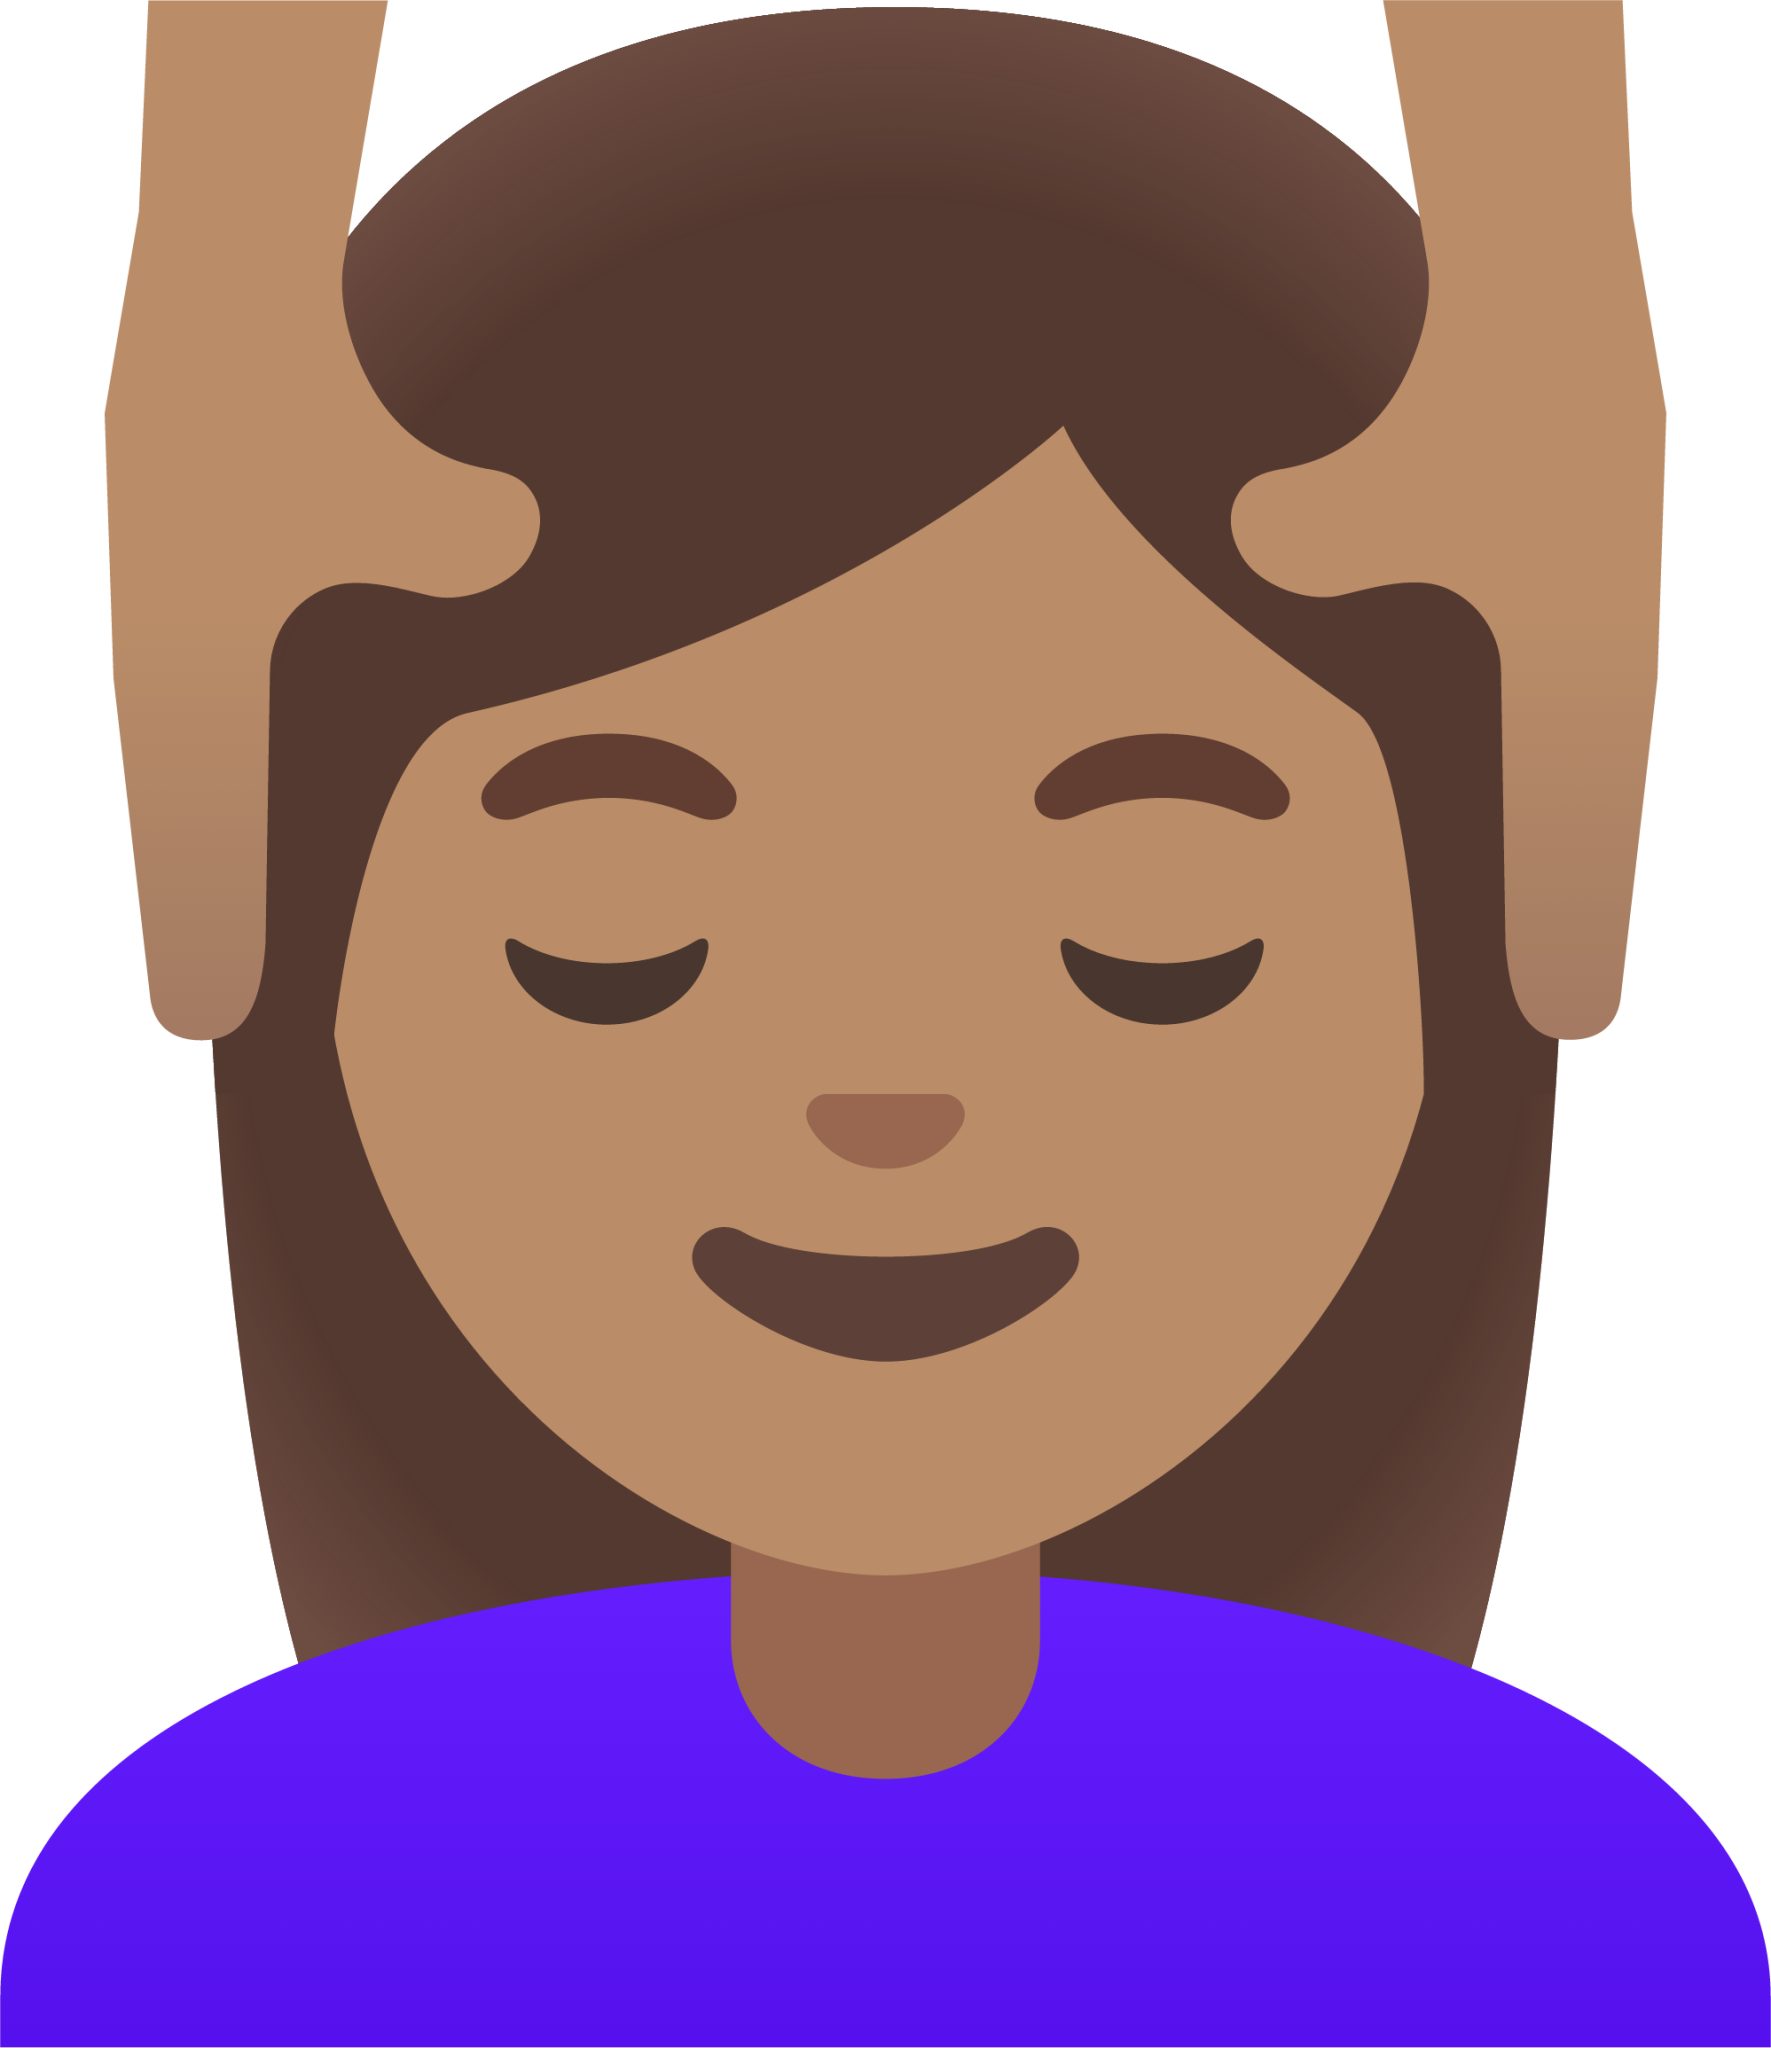 woman getting massage: medium skin tone emoji